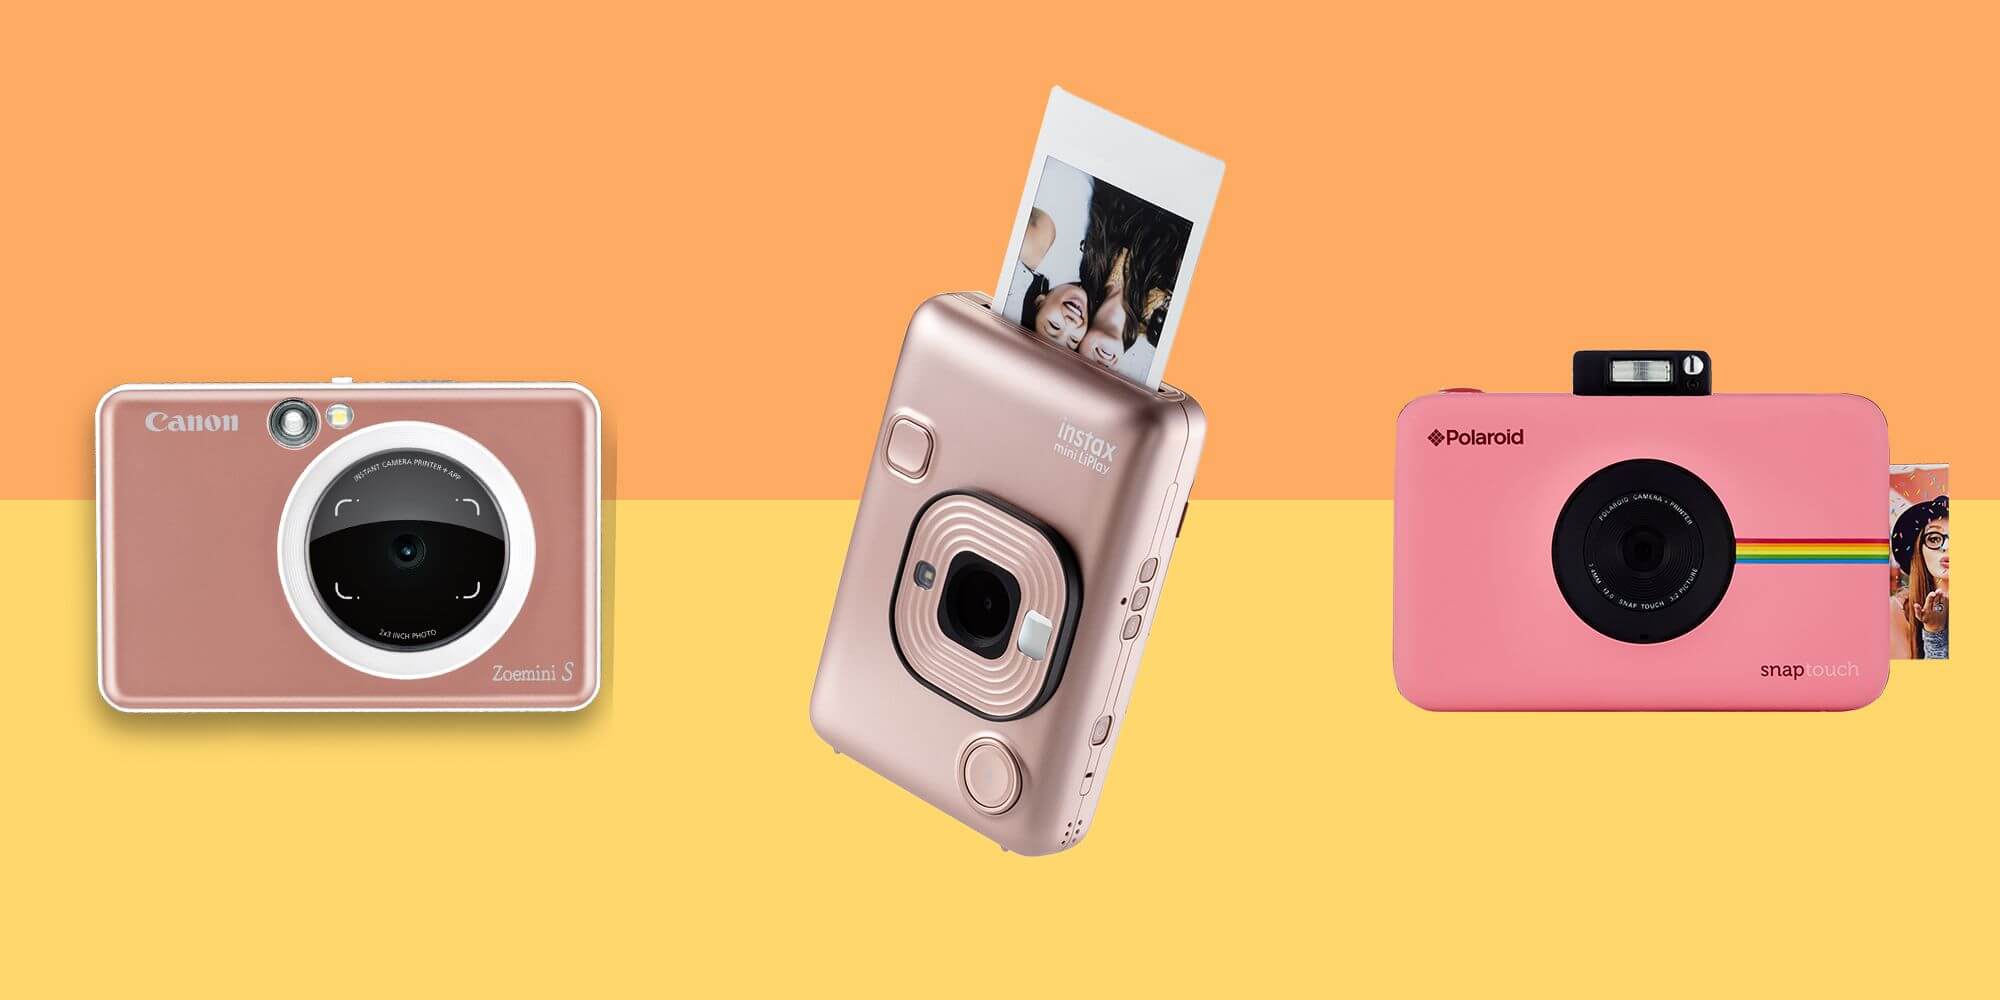 Facilitar rodear Tacto Las mejores cámaras Instantáneas y Polaroid | Blog de Qempo